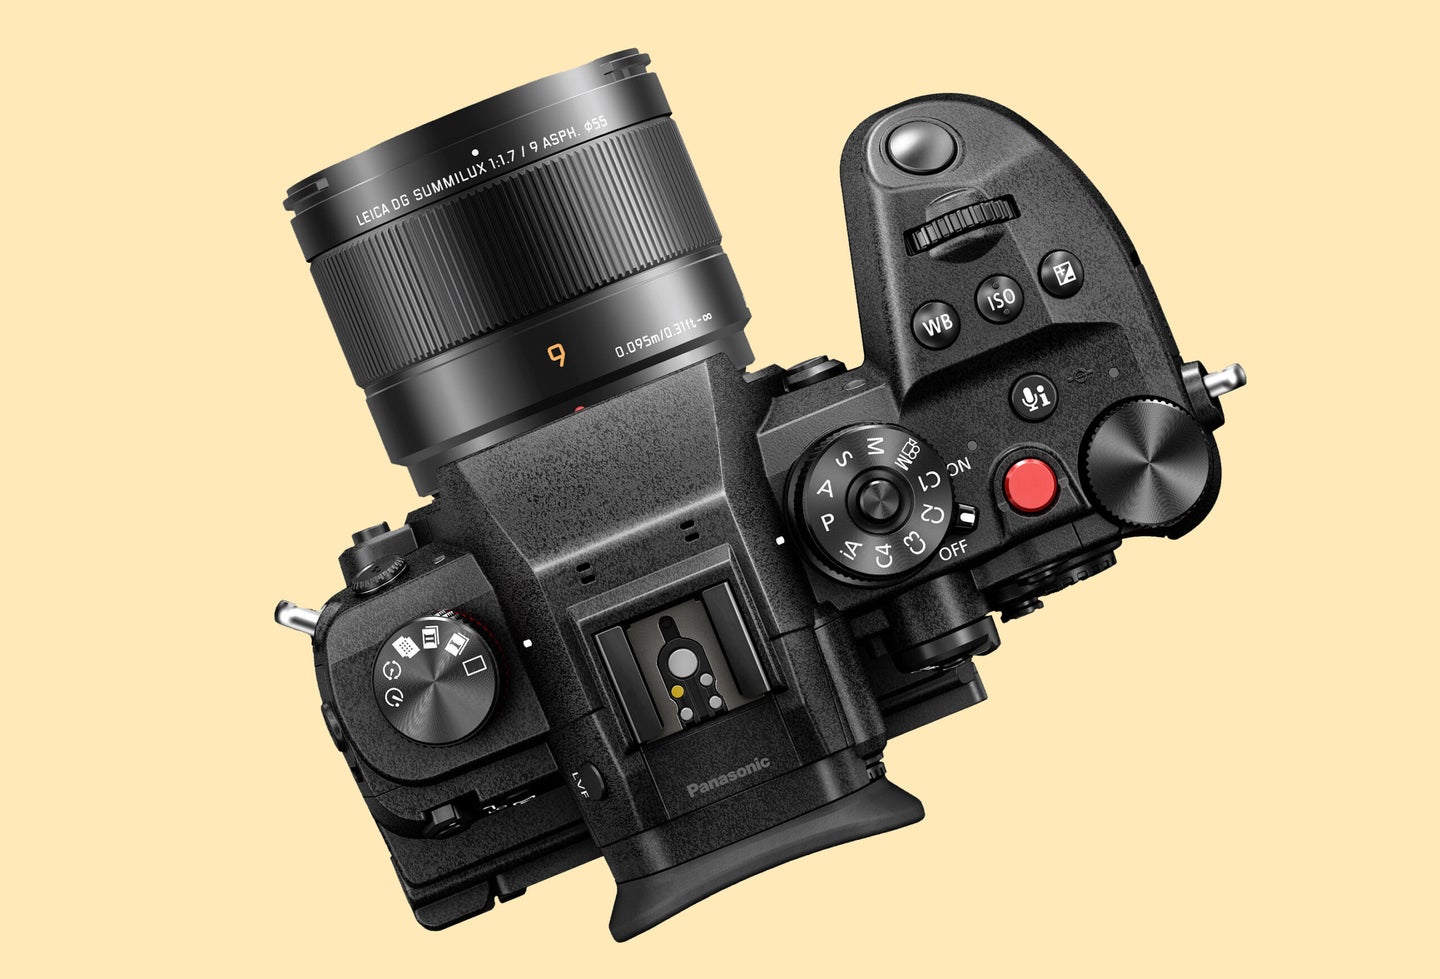 Leica DG Summilux 9mm f/1.7 lens